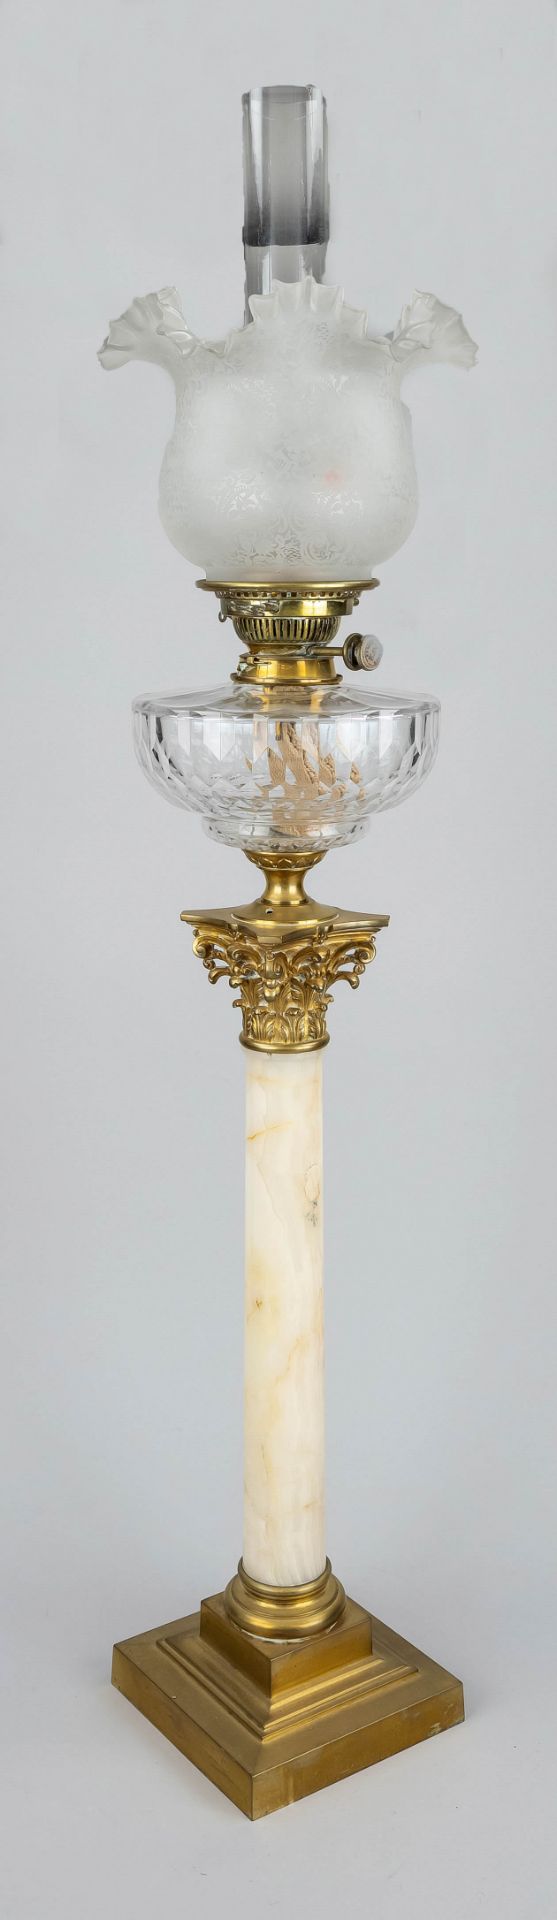 Large kerosene lamp, late 19th c. Square profiled base, smooth shaft made of white hard stone (